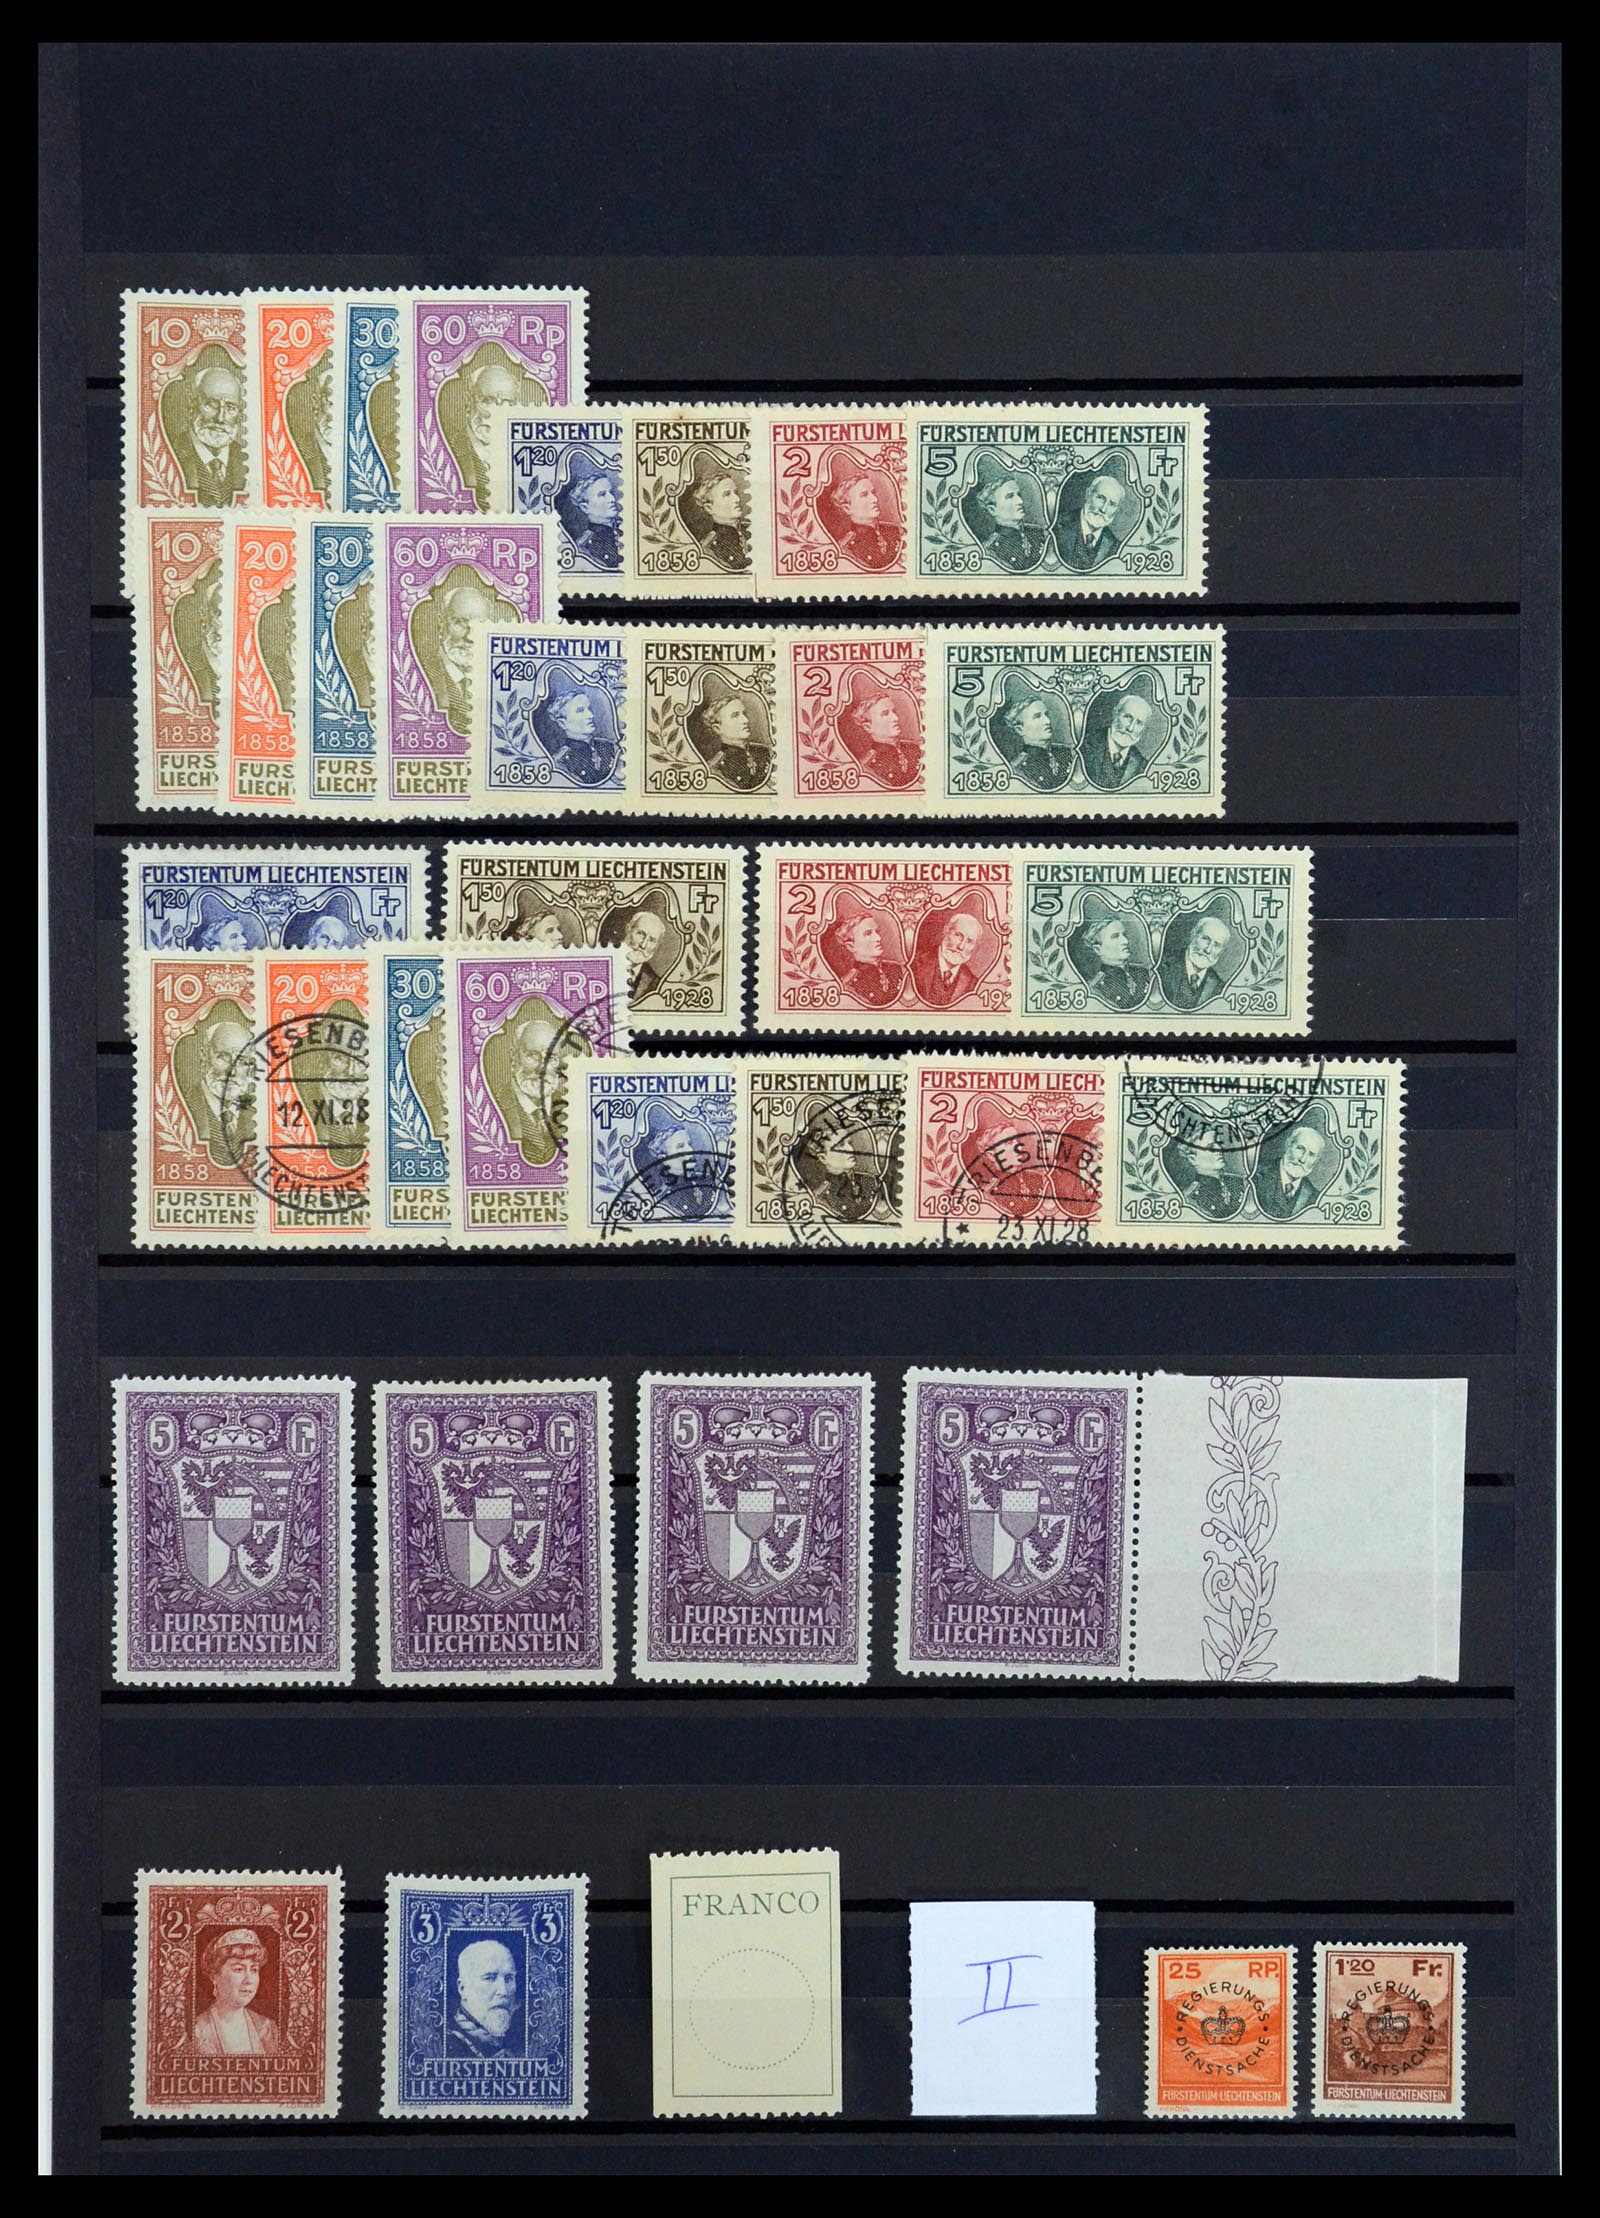 35995 001 - Stamp collection 35995 Liechtenstein key stamps 1928-1935.